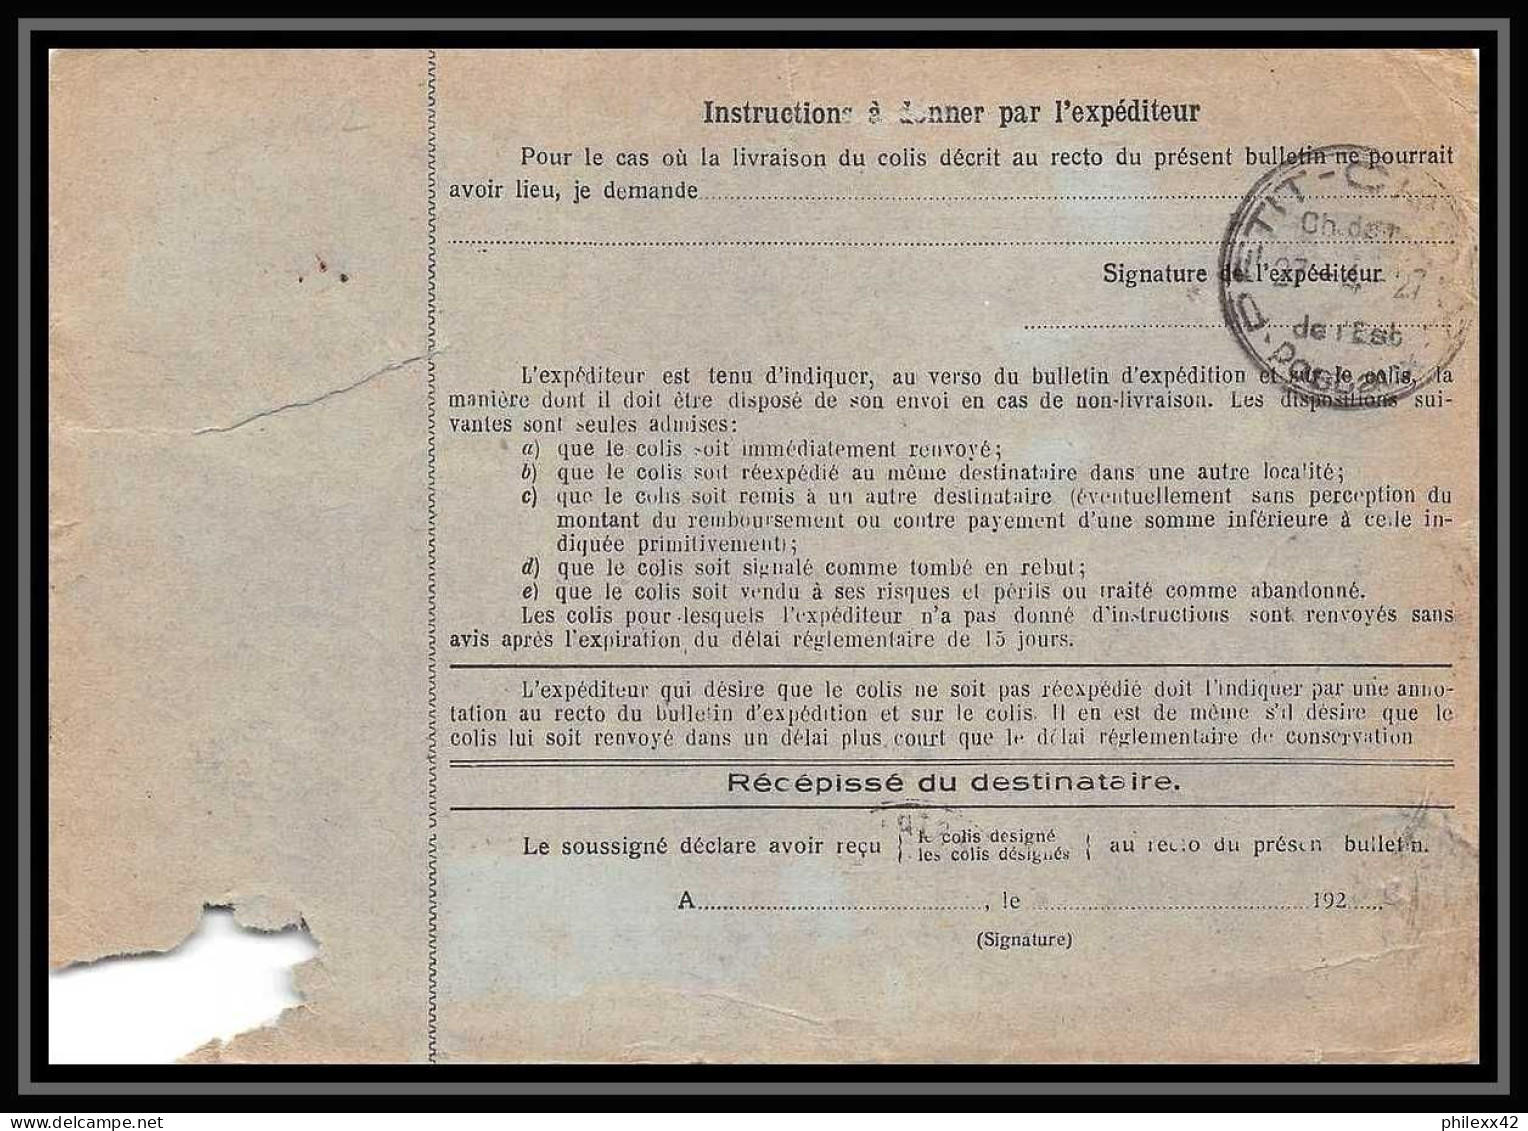 25211/ Bulletin D'expédition France Colis Postaux Fiscal Bas-Rhin Strasbourg 1927 Pour Vesoul Haute-Saône Merson N°123  - Brieven & Documenten